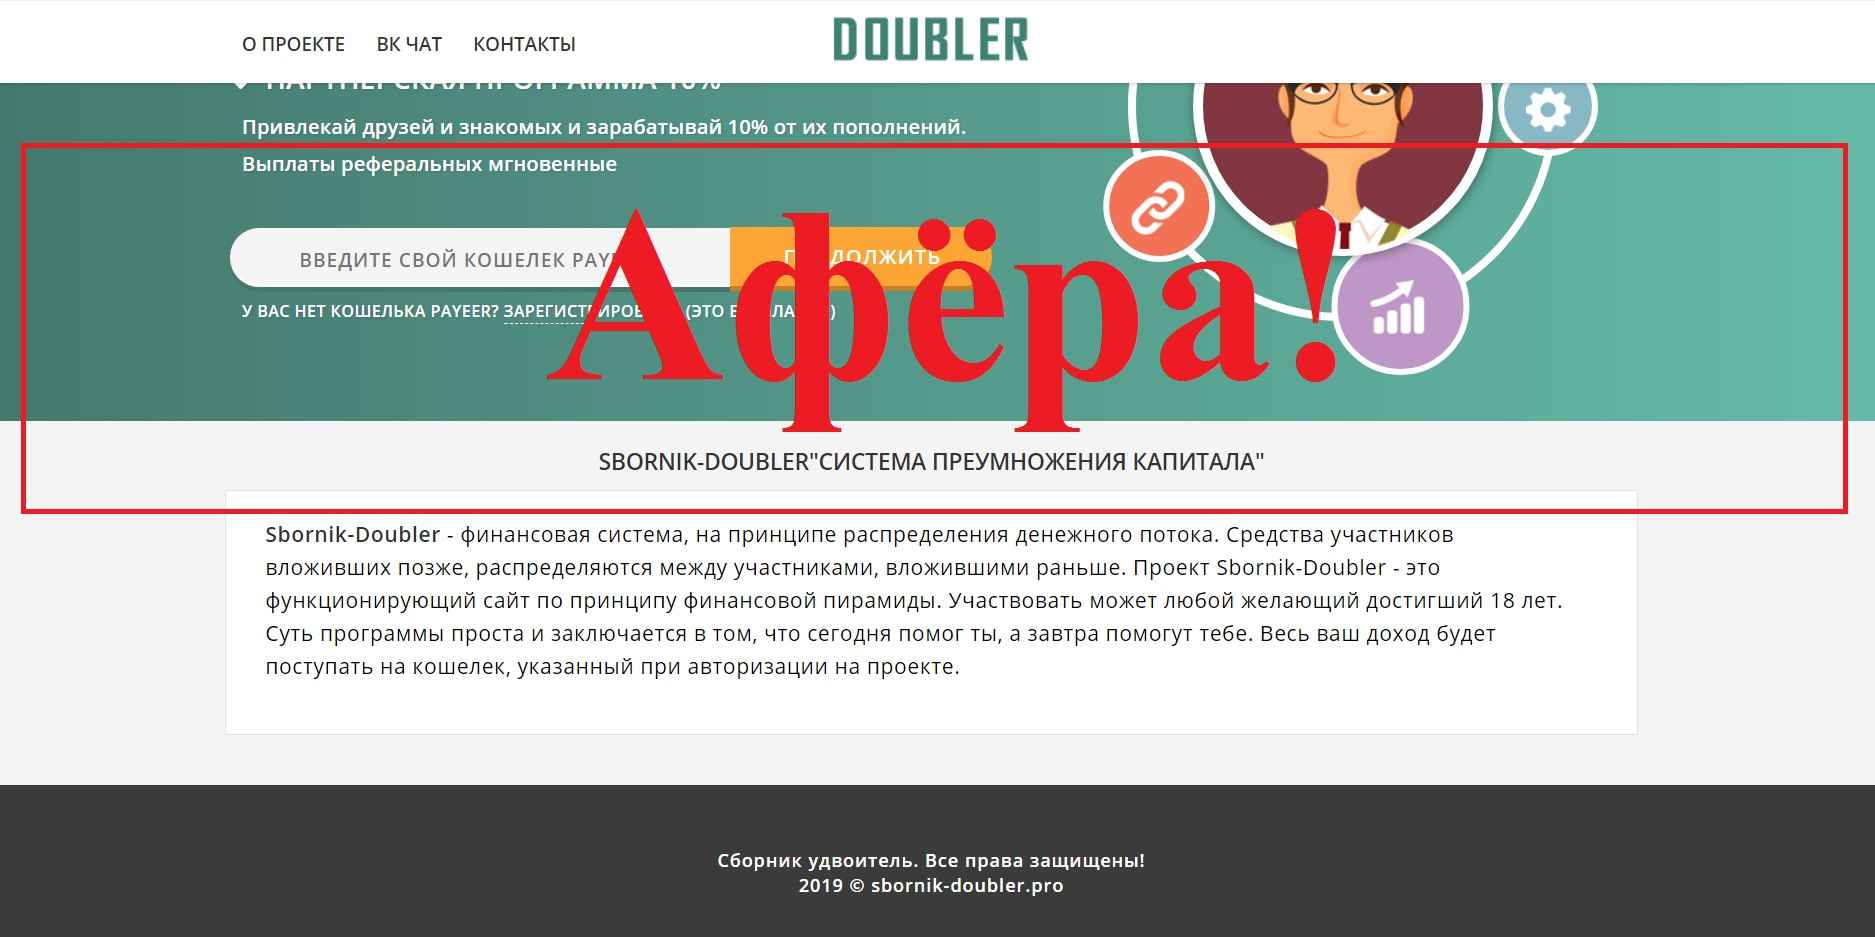 Sbornik Doubler – финансовая система sbornik-doubler.pro